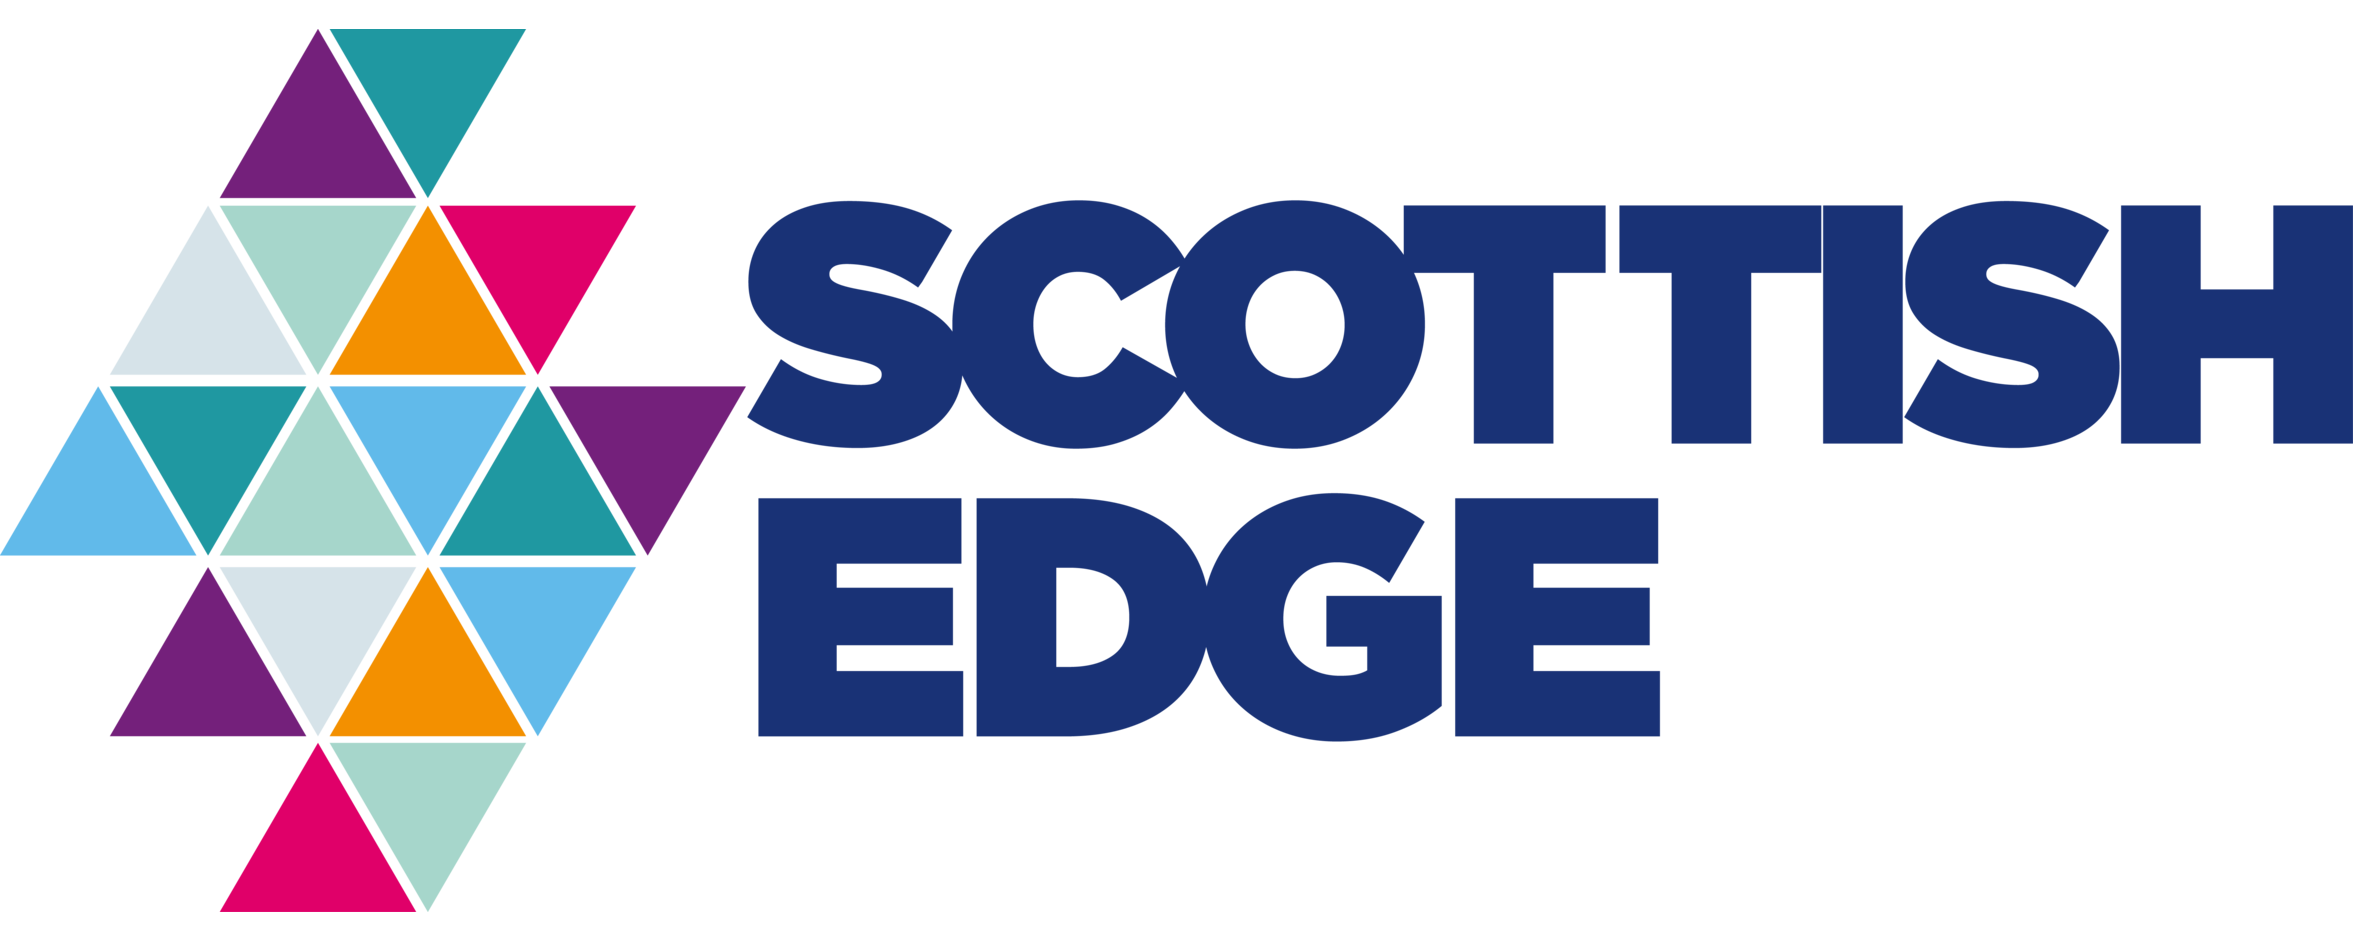 Scottish EDGE